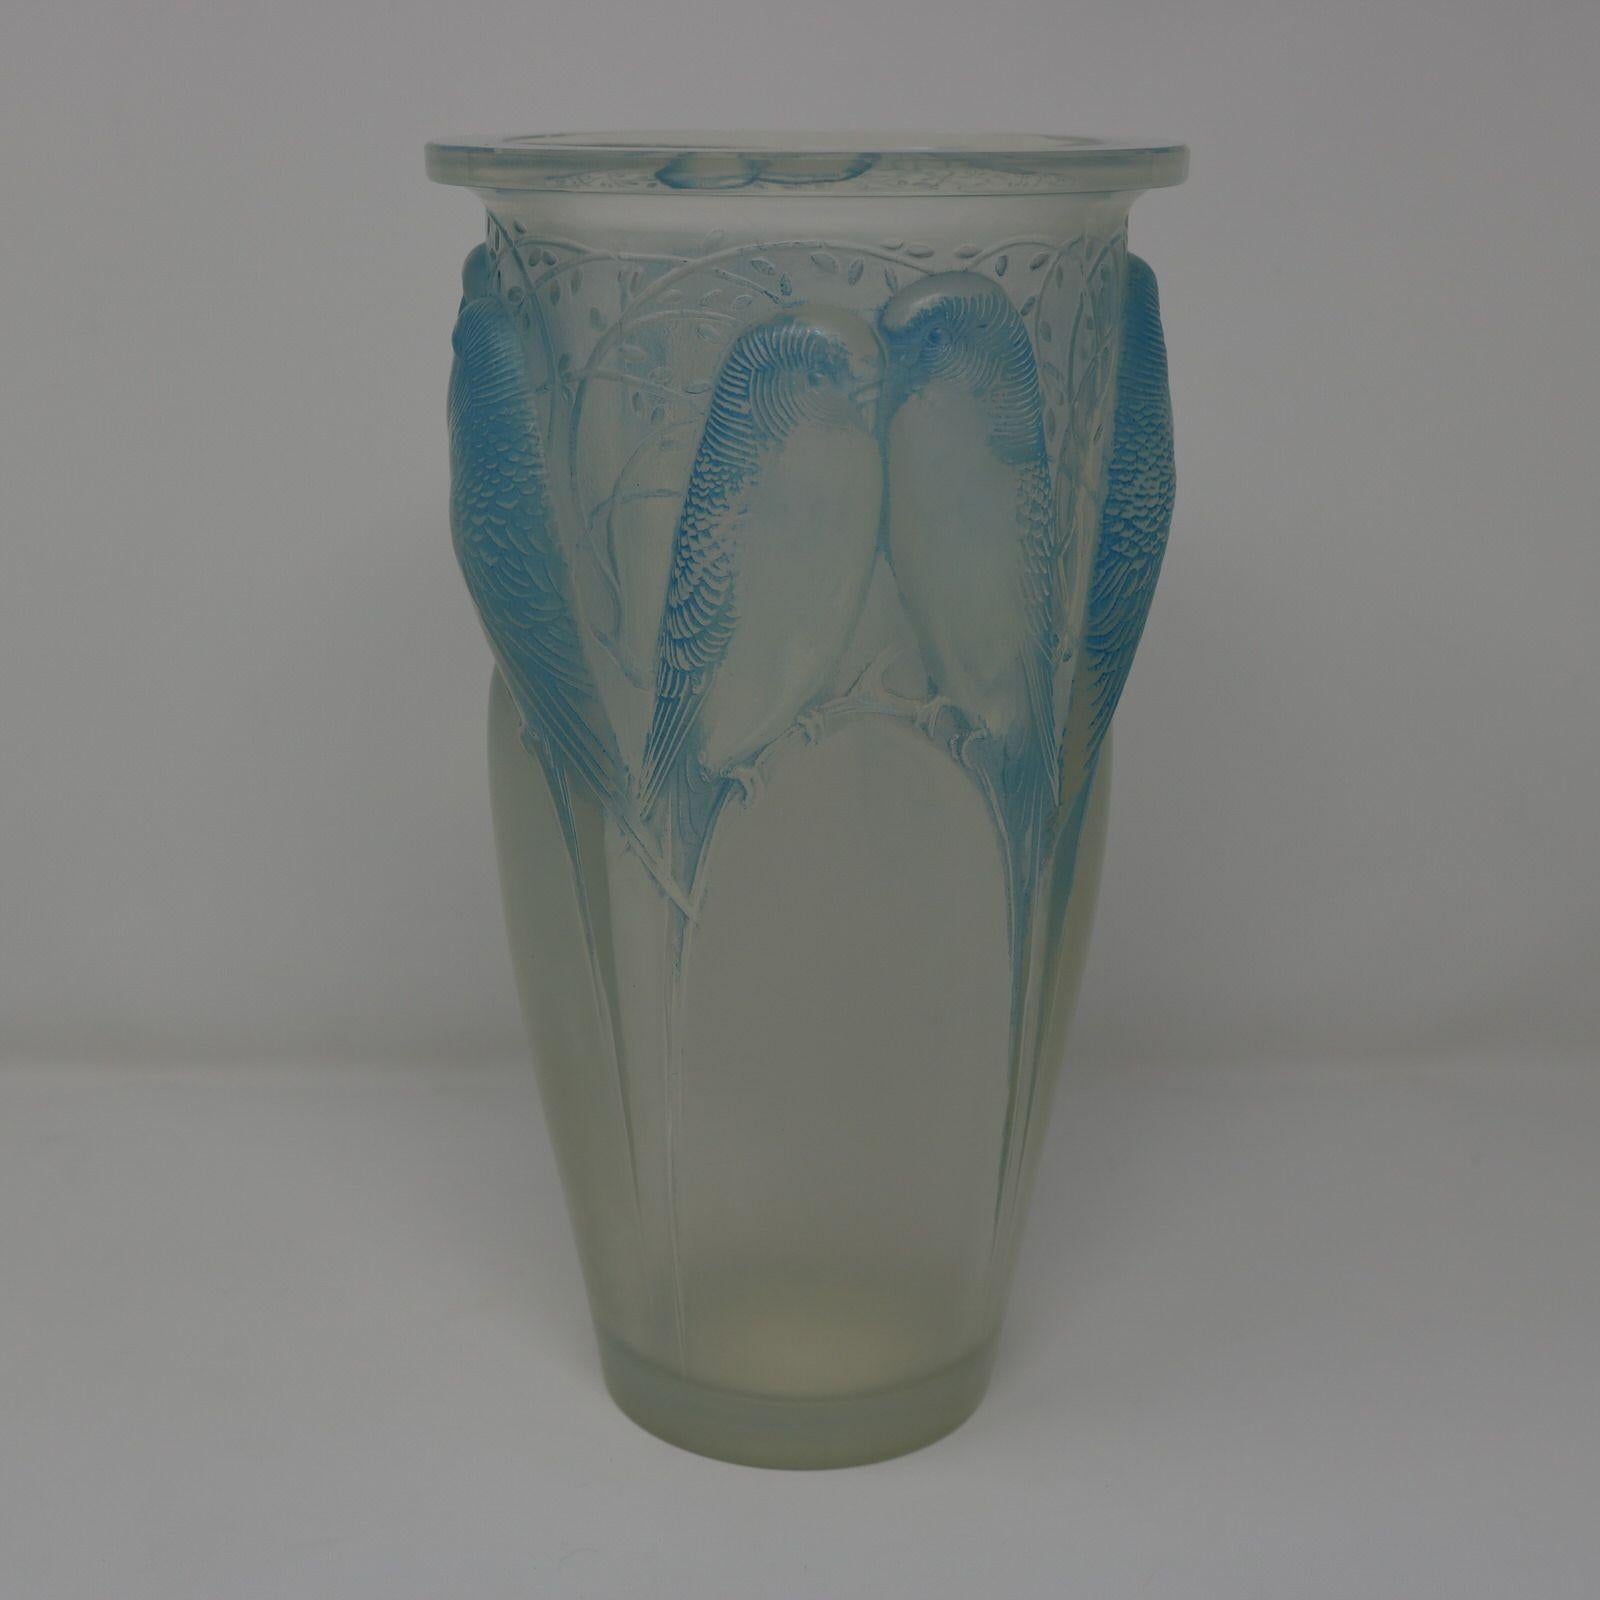 Vase 'Ceylan' en verre opalescent René Lalique. Taches bleues sur les détails. Ce motif représente des perruches, côte à côte. Marque de fabricant gravée et découpée dans la roue, 'R. LALIQUE FRANCE No.905'. Référence du livre : 